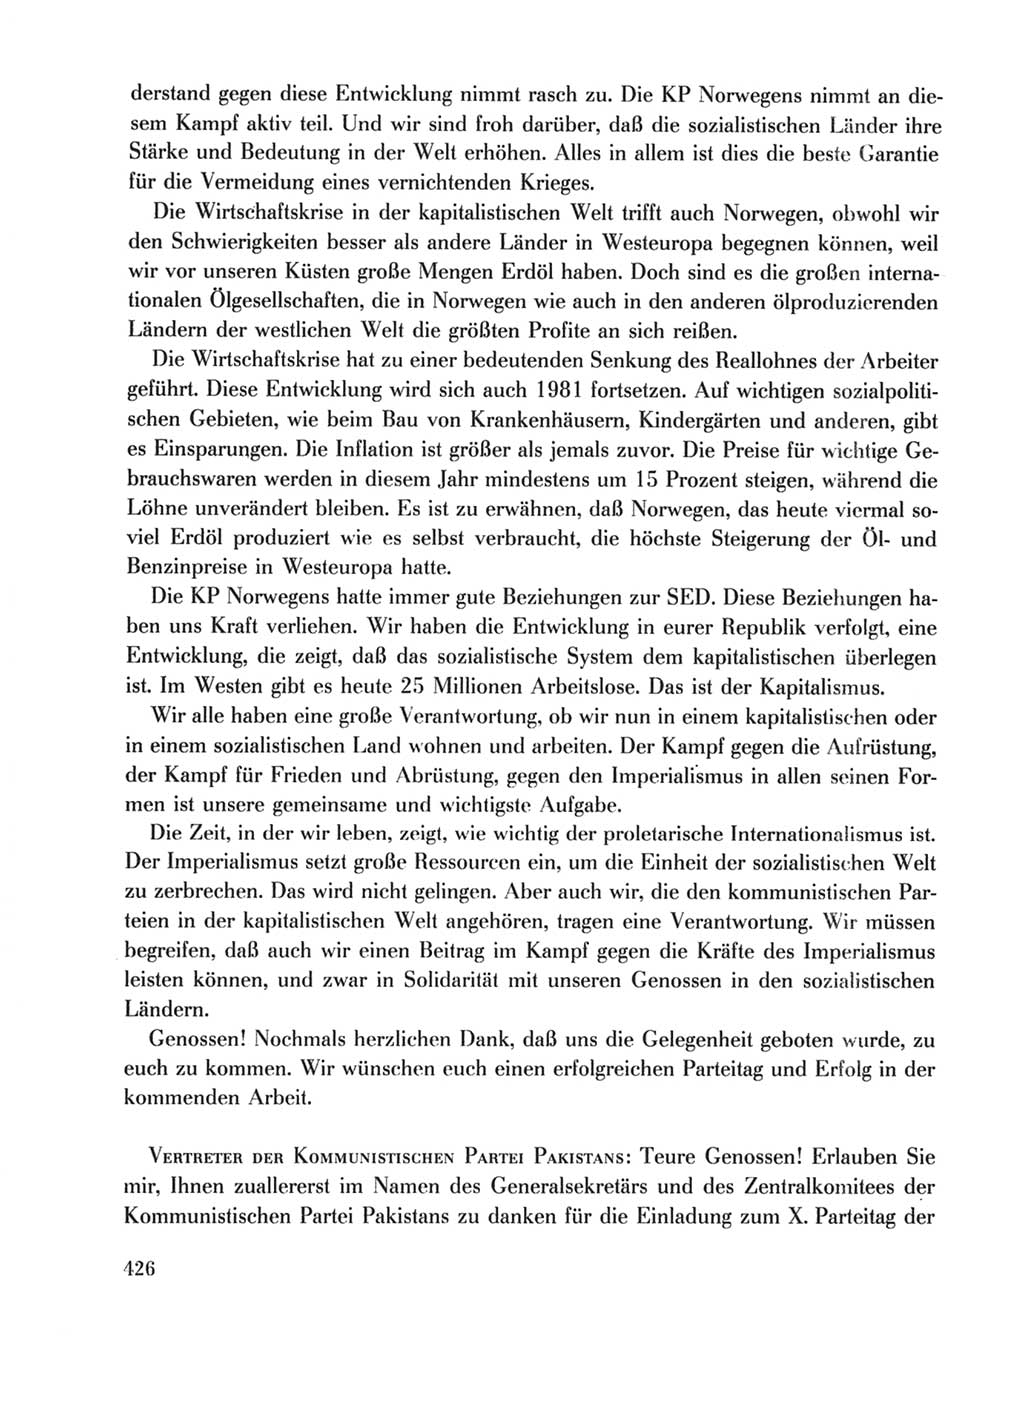 Protokoll der Verhandlungen des Ⅹ. Parteitages der Sozialistischen Einheitspartei Deutschlands (SED) [Deutsche Demokratische Republik (DDR)] 1981, Band 1, Seite 426 (Prot. Verh. Ⅹ. PT SED DDR 1981, Bd. 1, S. 426)